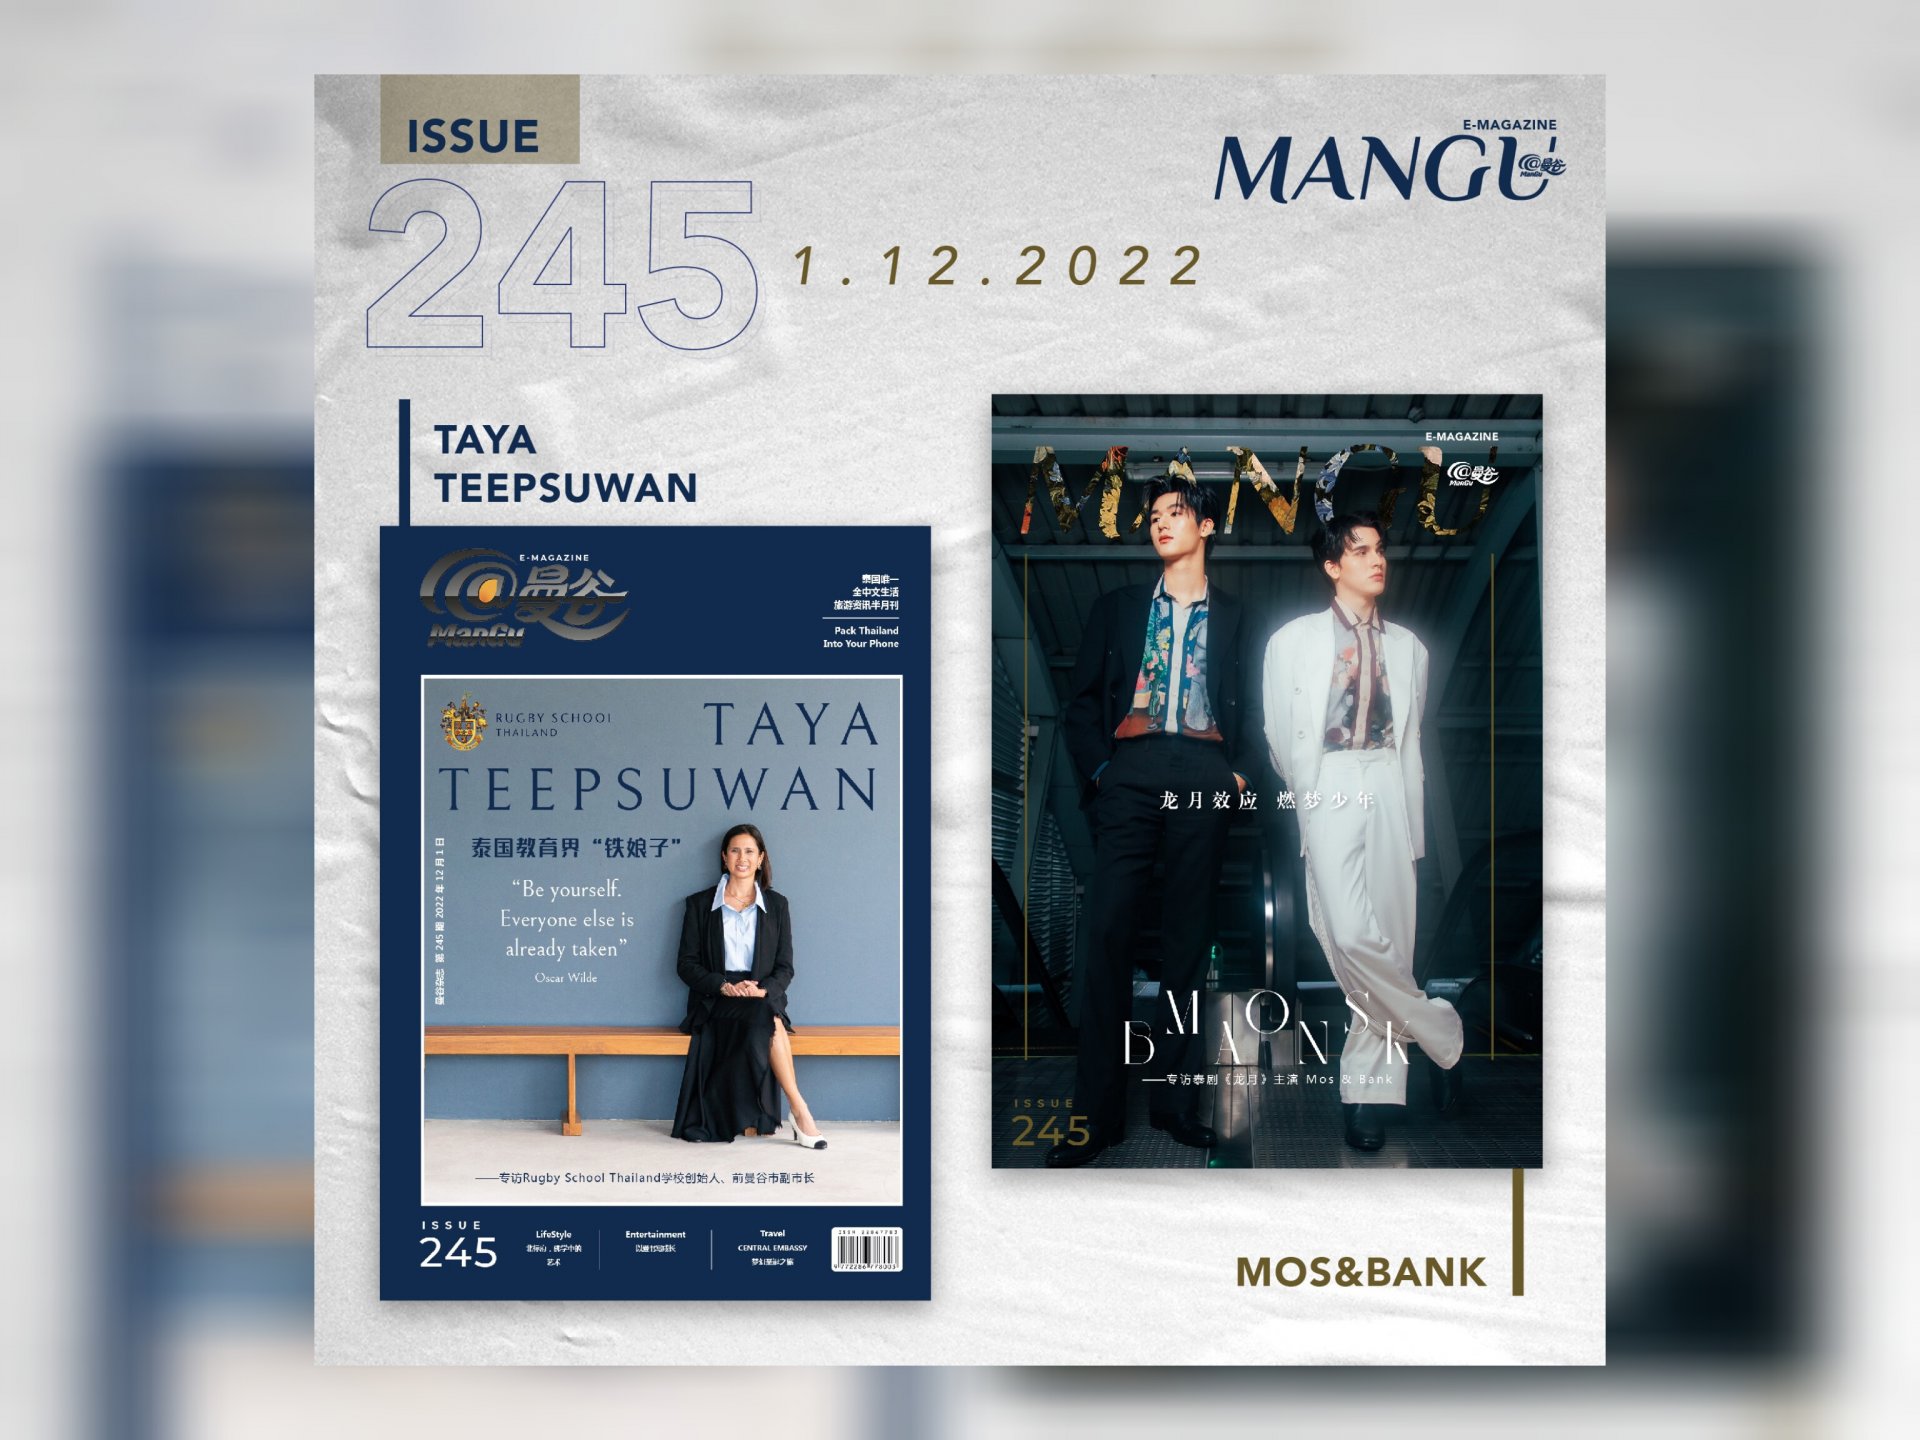 “สตรีเหล็ก” แห่งวงการการศึกษาไทย ผู้ก่อตั้ง Rugby School Thailand อดีตรองผู้ว่าราชการกรุงเทพฯ “คุณอีฟ ทยา” และ สองนักแสดงหนุ่ม "มอส & แบงค์" นักแสดงนำจากซีรีส์ “Big Dragon The Series มังกรกินใหญ่” ในนิตยสาร @ManGu Magazine